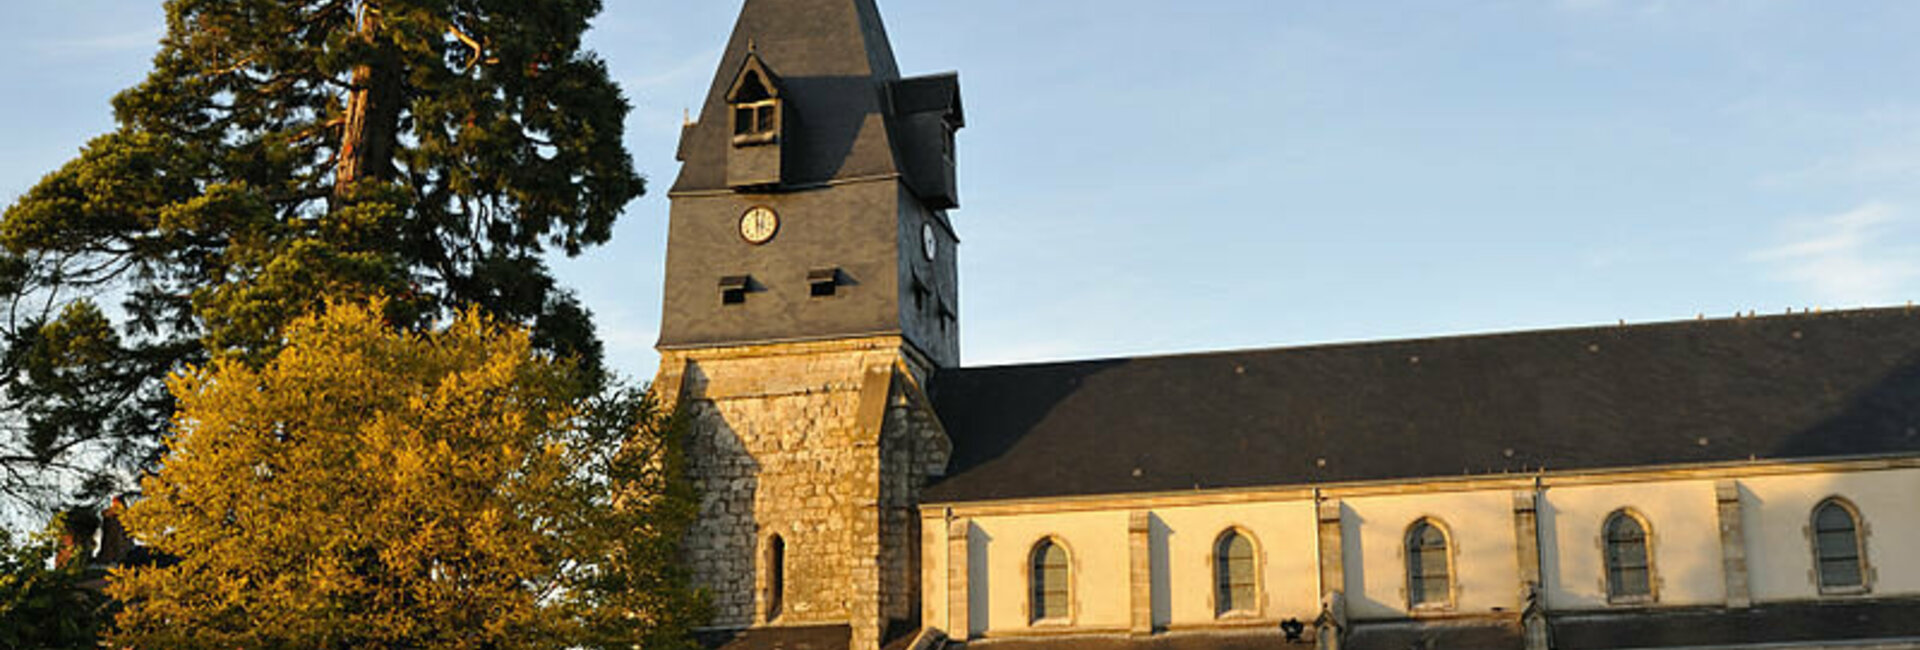 Le PLU de la commune de Aschères-le-Marché (45) Loiret